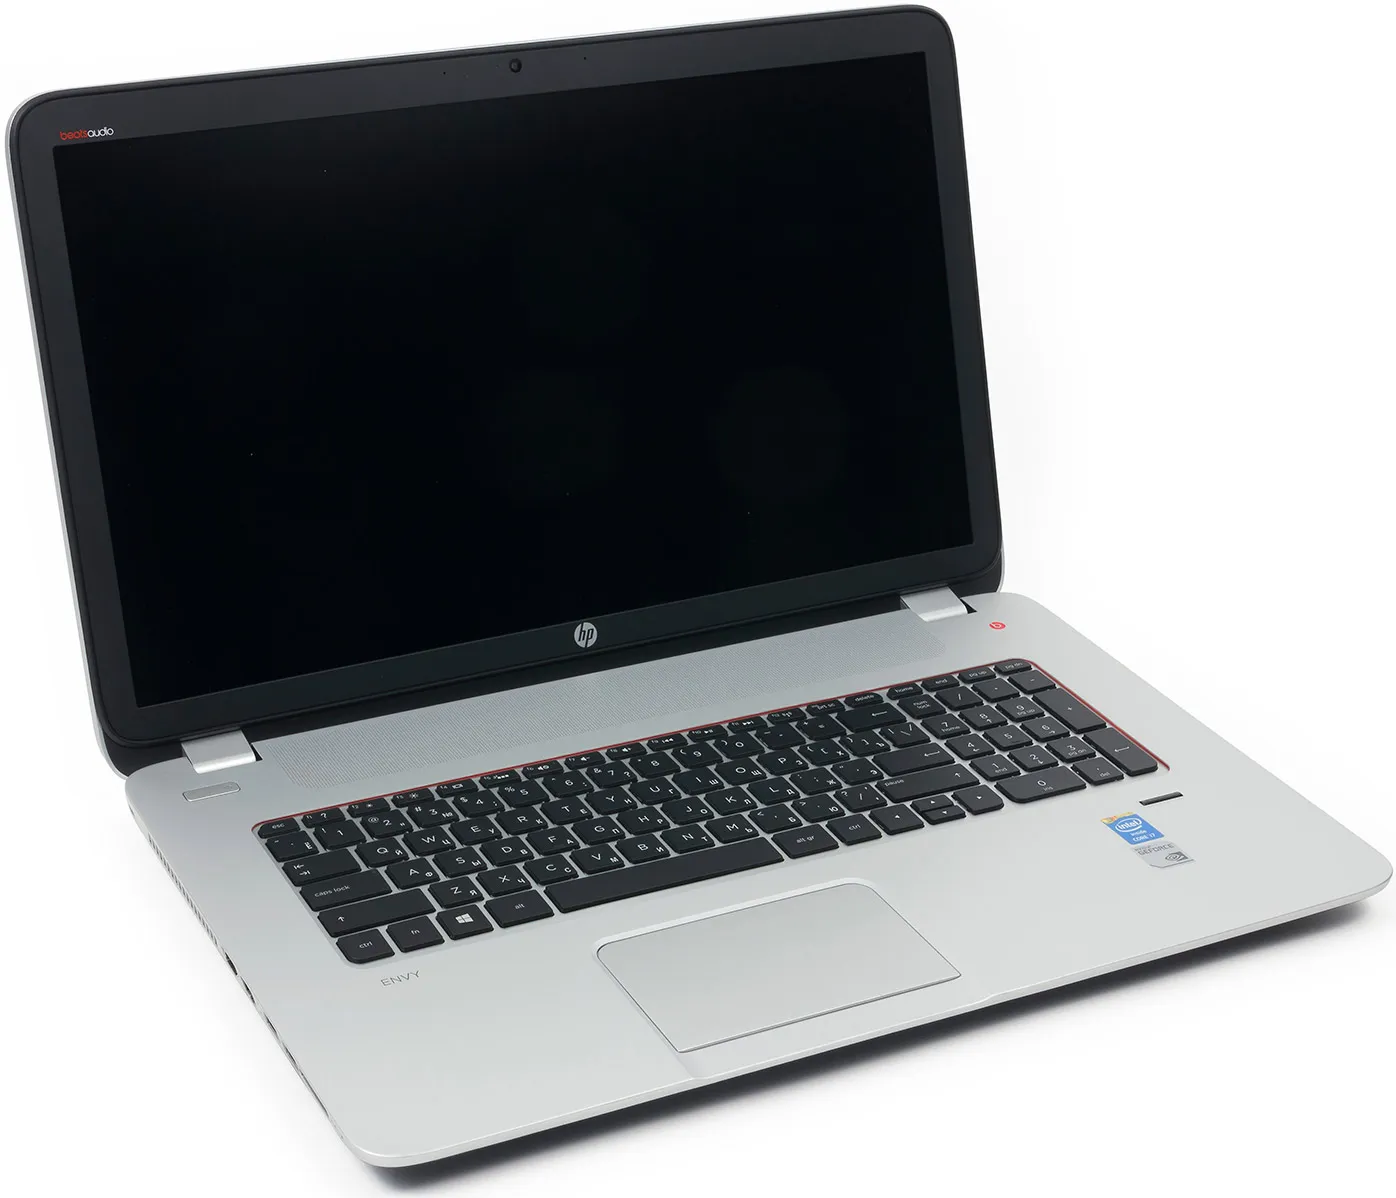 Ноутбук HP 455 G1 /AMD A10-5750/8 GB DDR4/ 500GB HDD /15.6" HD LED/ 2GB AMD Radeon HD 8750M/DVD/RUS+ Bag#10